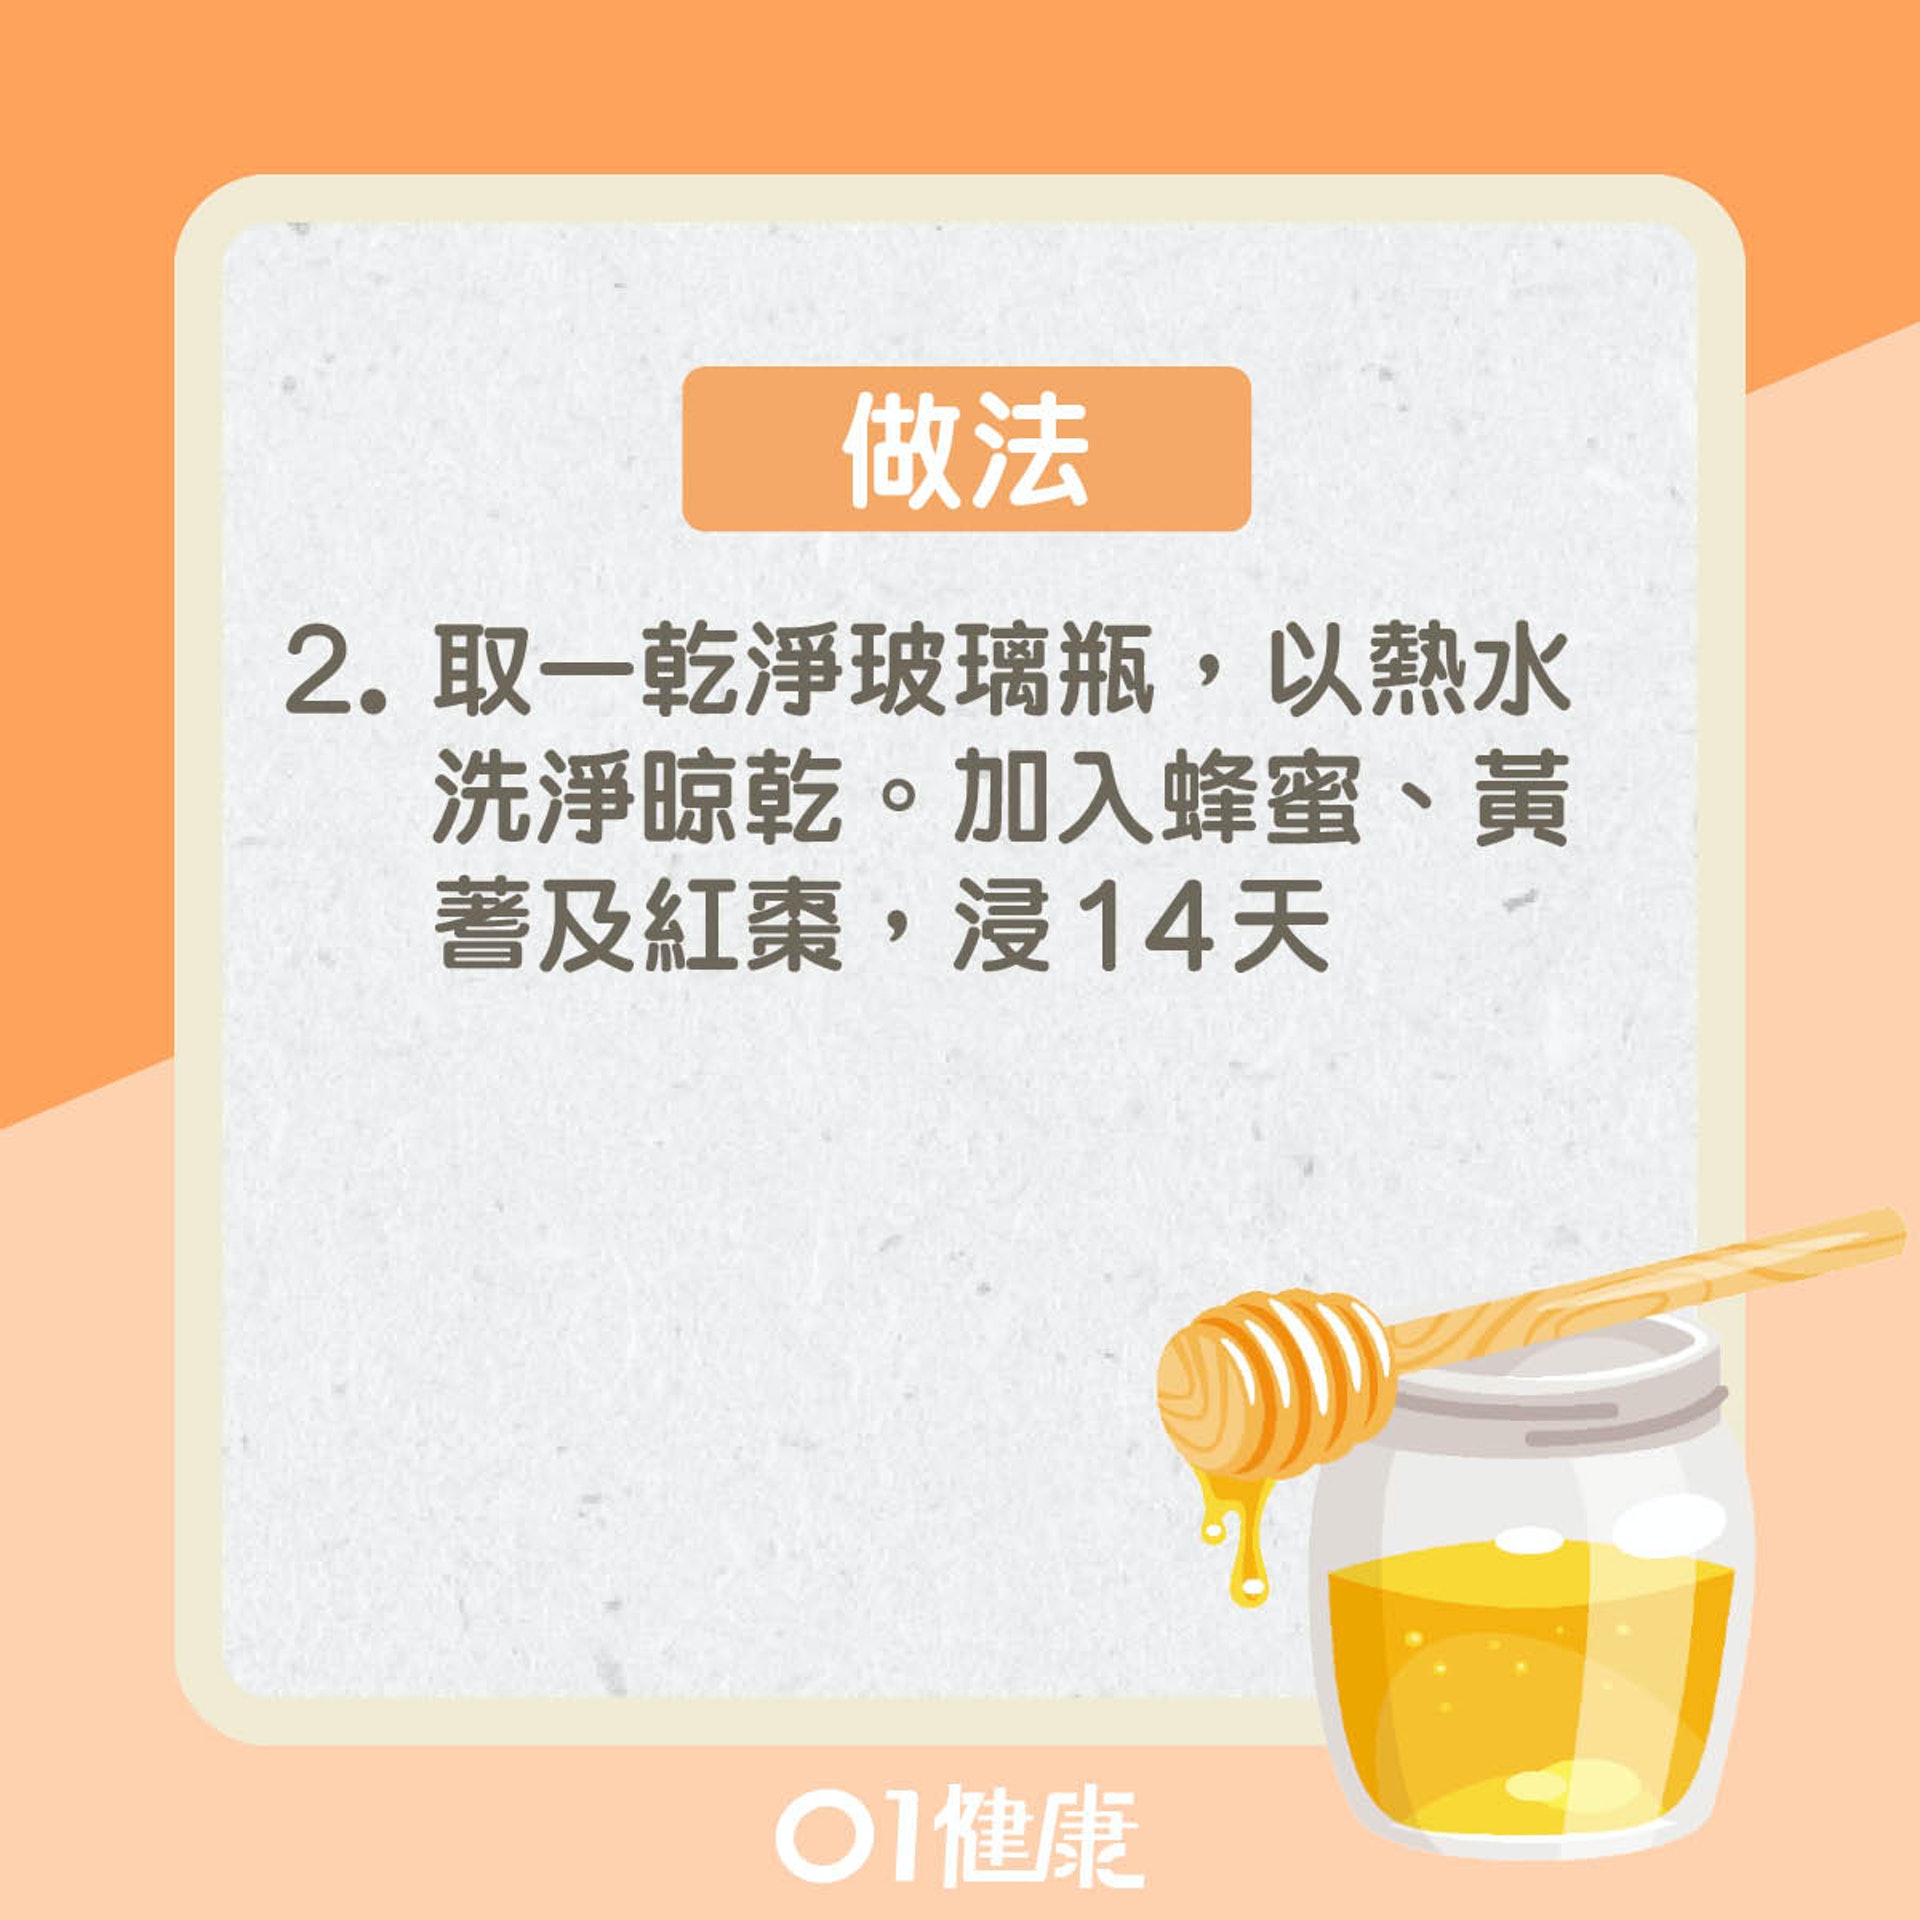 蜜黃蓍紅棗茶（01製圖）